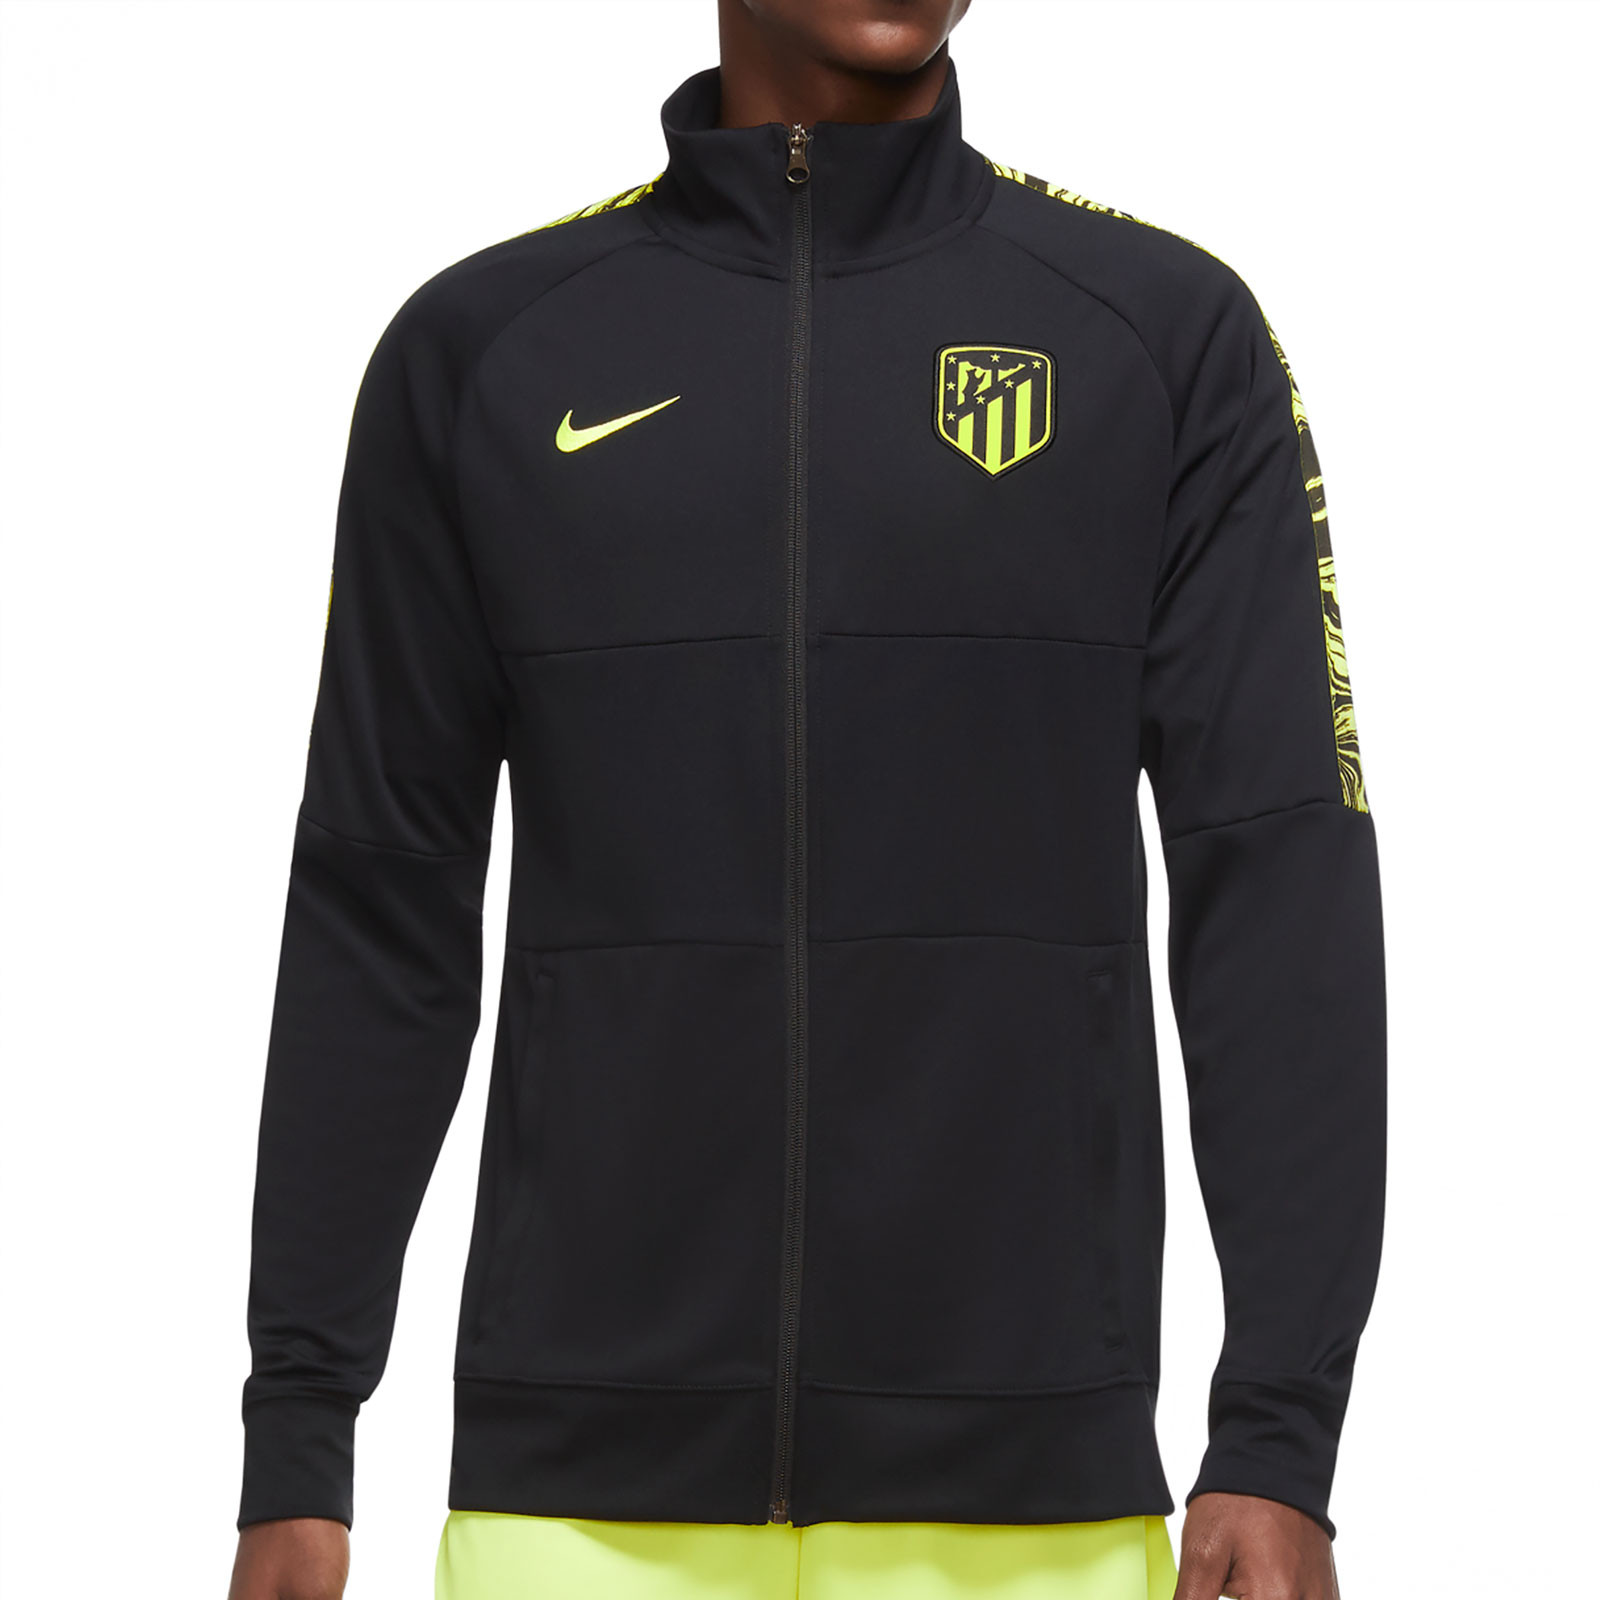 Chaqueta Nike Atlético I96 2020 2021 negra